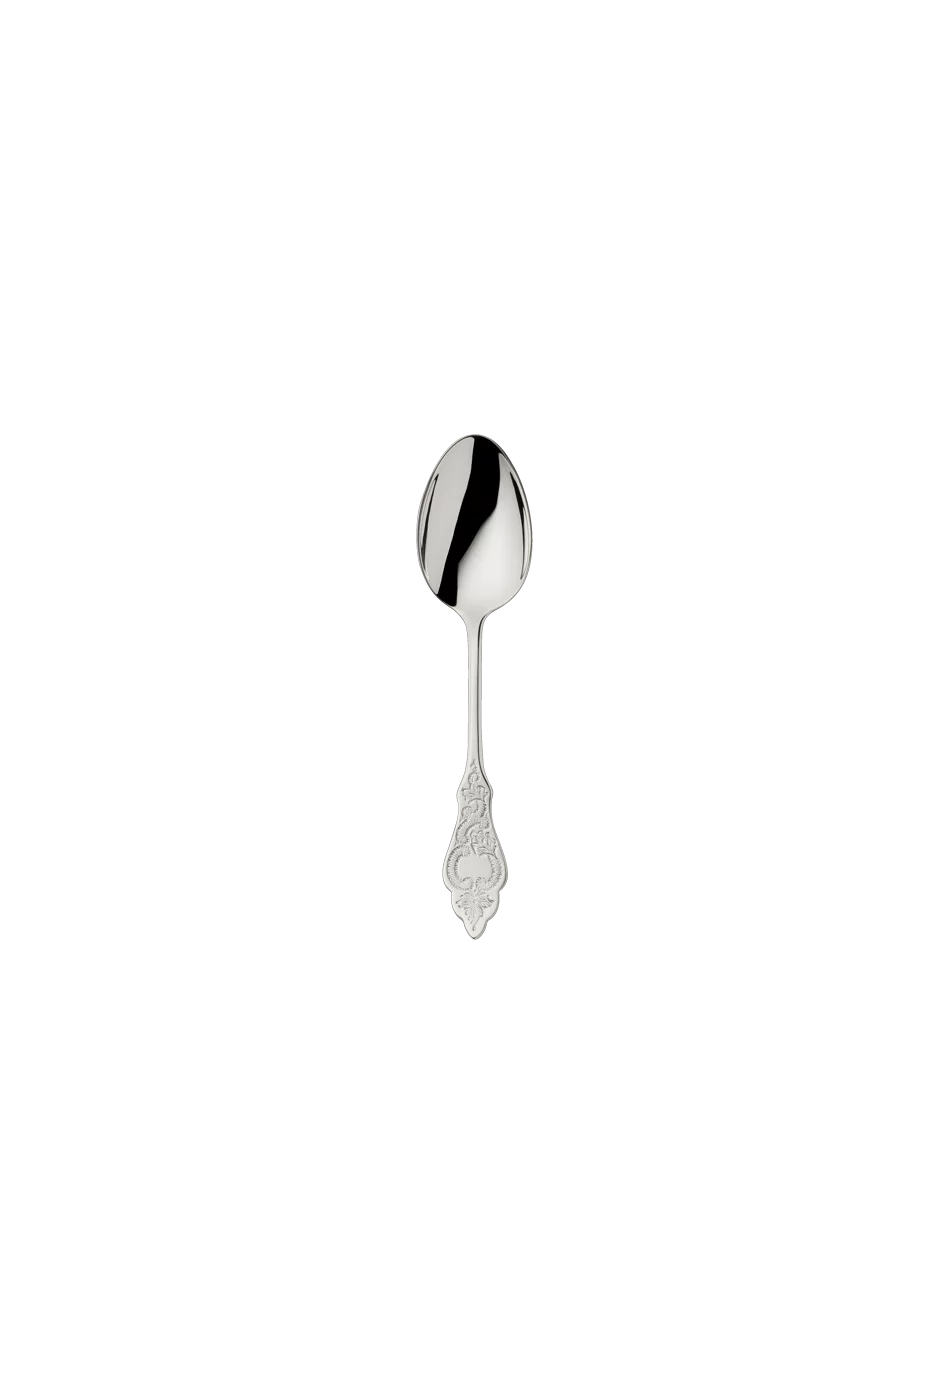 Ostfriesen Mocha Spoon 10,5 Cm (150g massive silverplated)